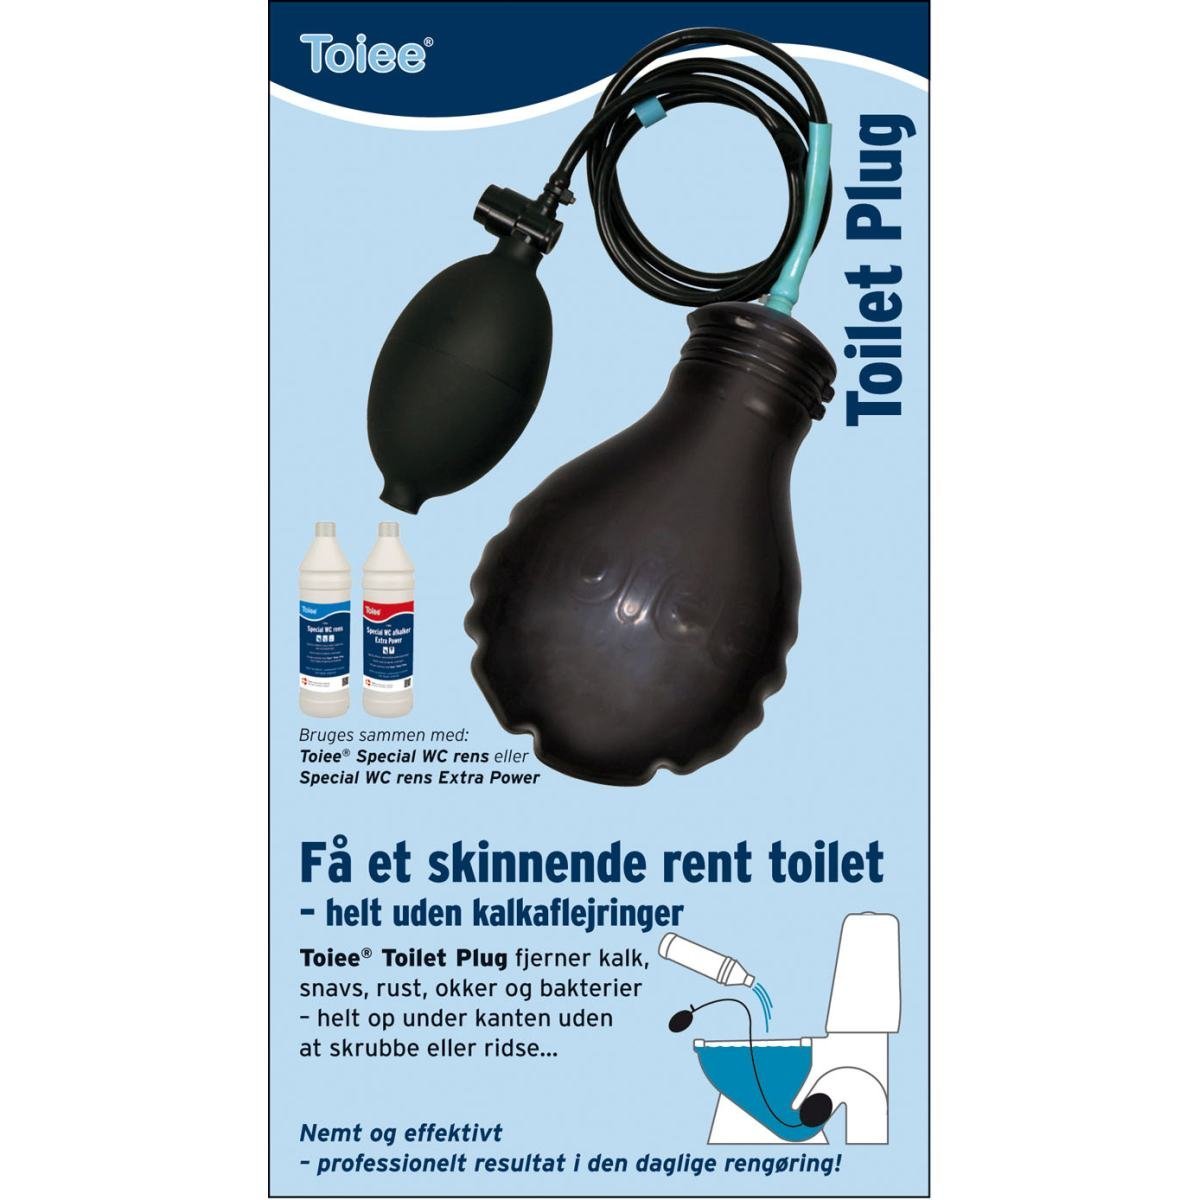 Toalett avkalkareplugg - Toiee Toilet Plug